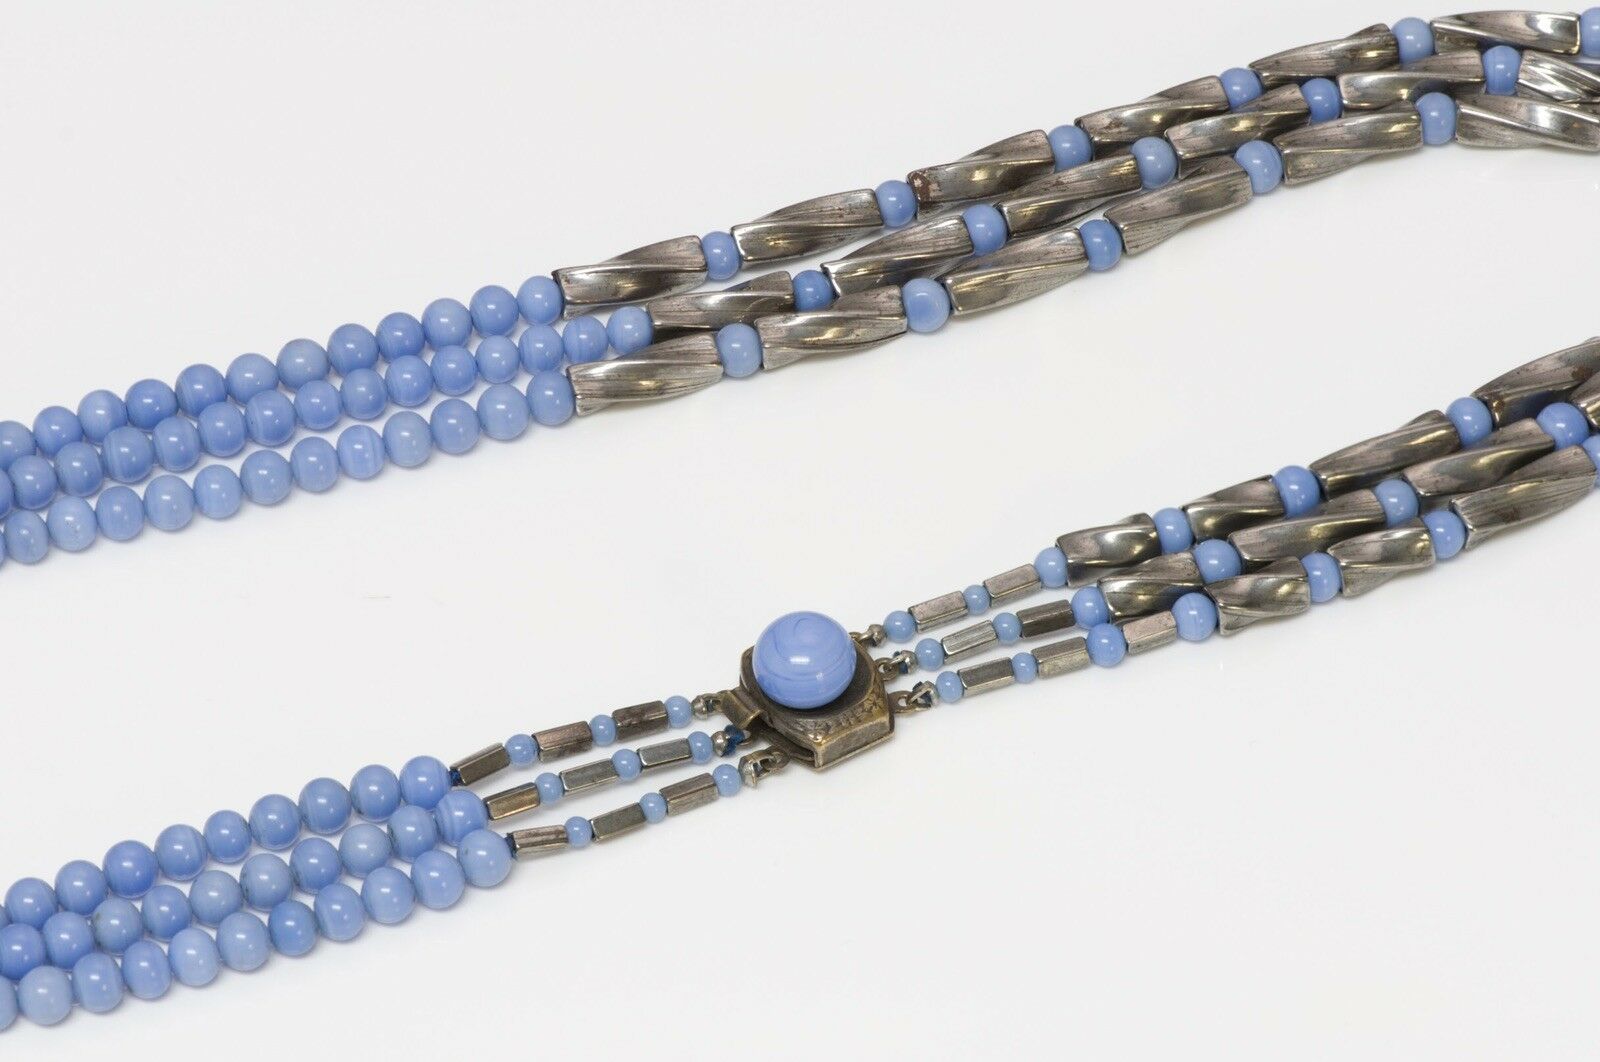 Vintage 1950's Louis Rousselet Blue Glass Beads Necklace